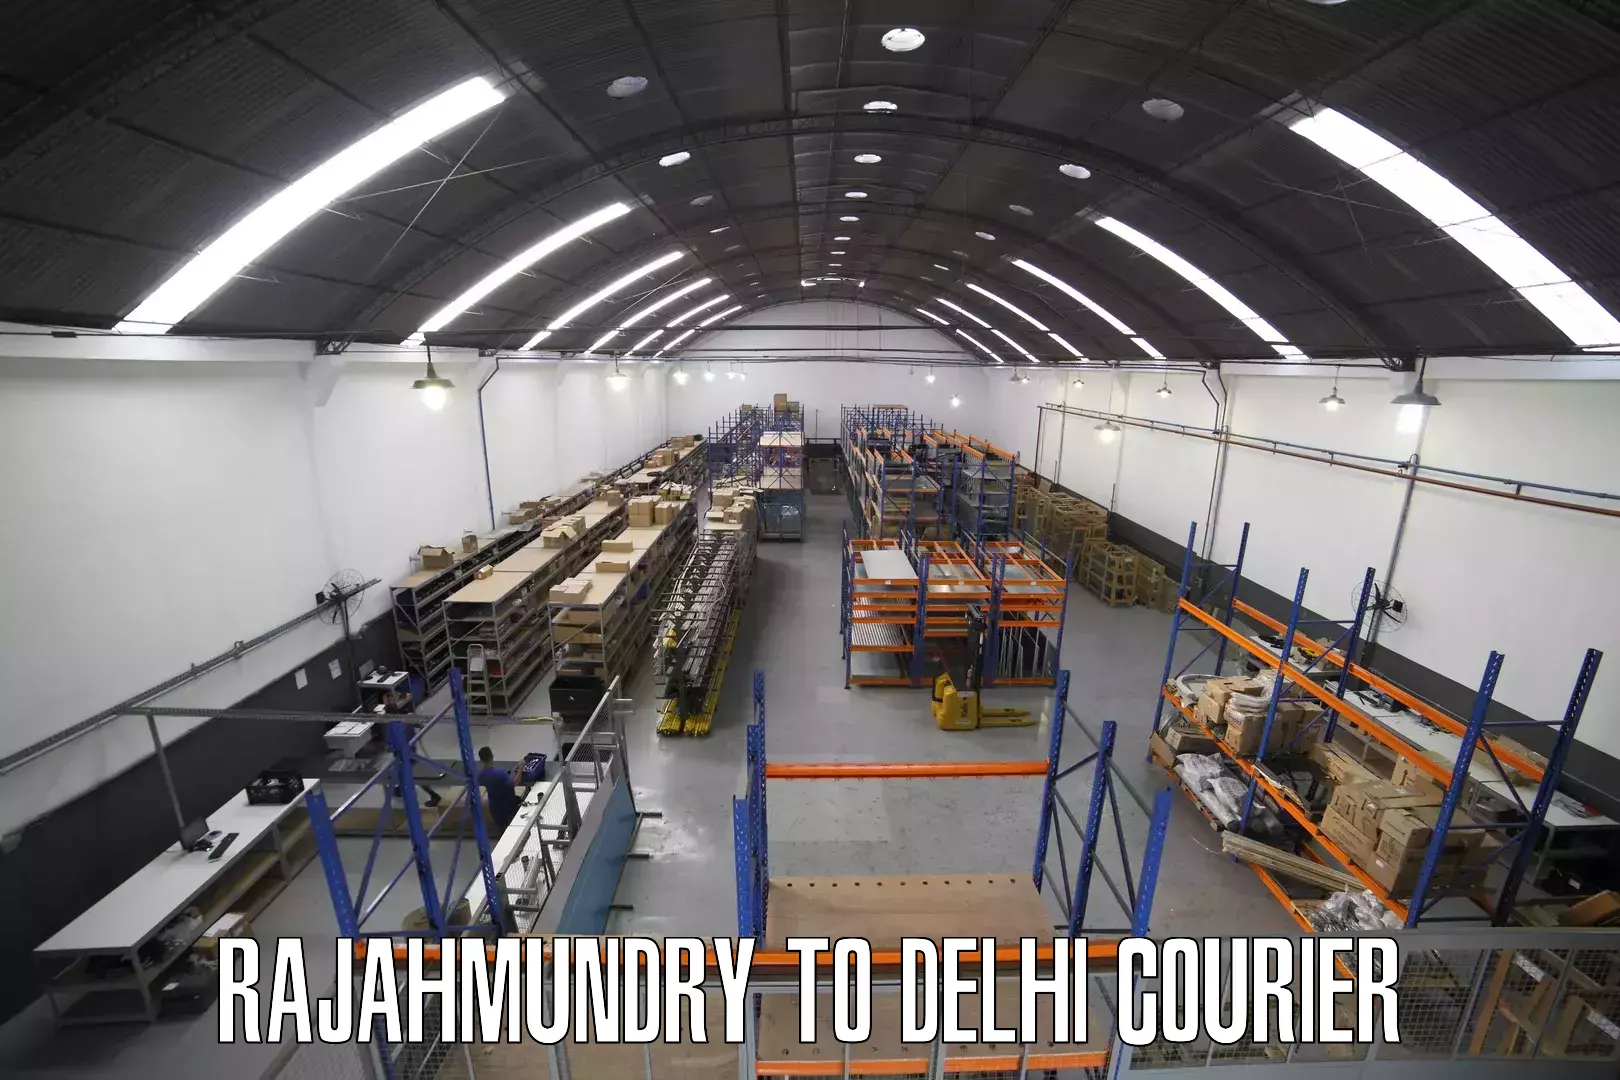 Speedy delivery service Rajahmundry to Guru Gobind Singh Indraprastha University New Delhi